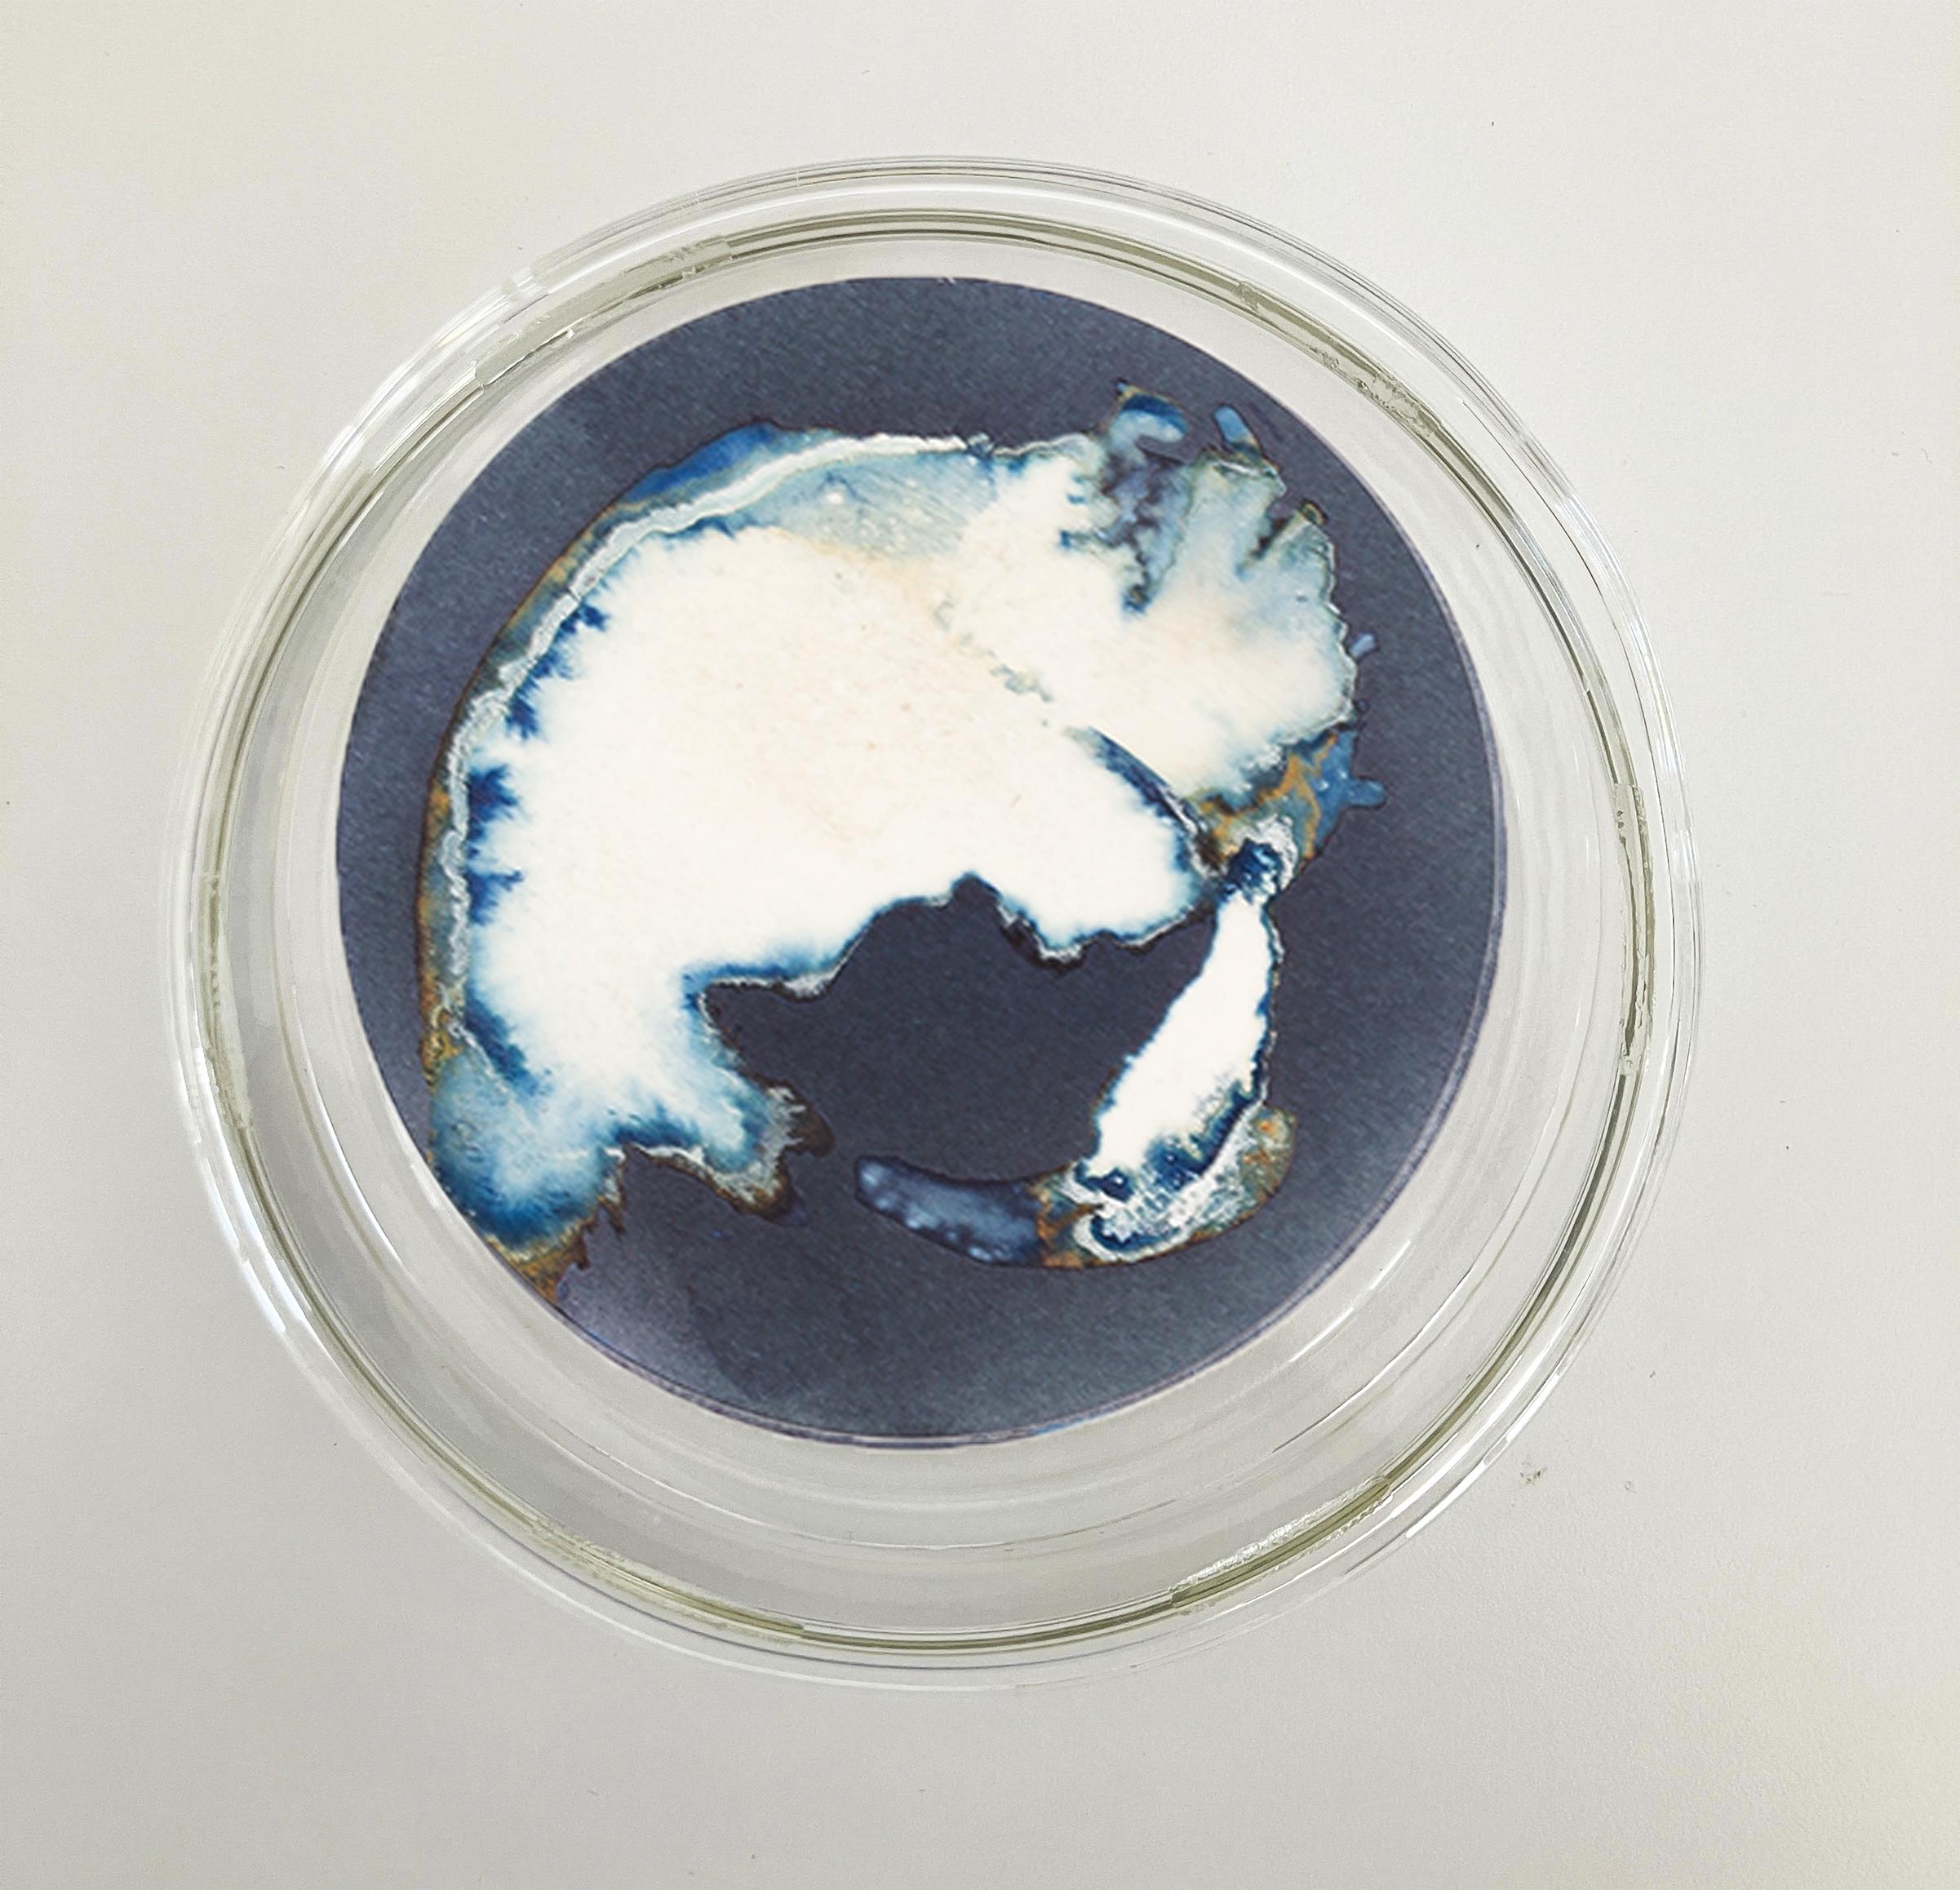 Esponjas 8, 11 und 16. Cyanotypie-Fotografien, montiert in einer hochfesten Glasschale im Angebot 1